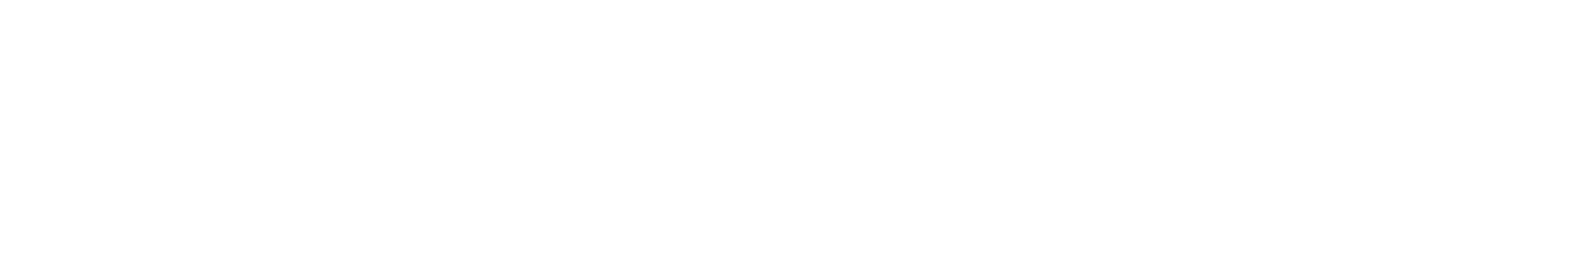 Westlake Chemical Partners logo large for dark backgrounds (transparent PNG)